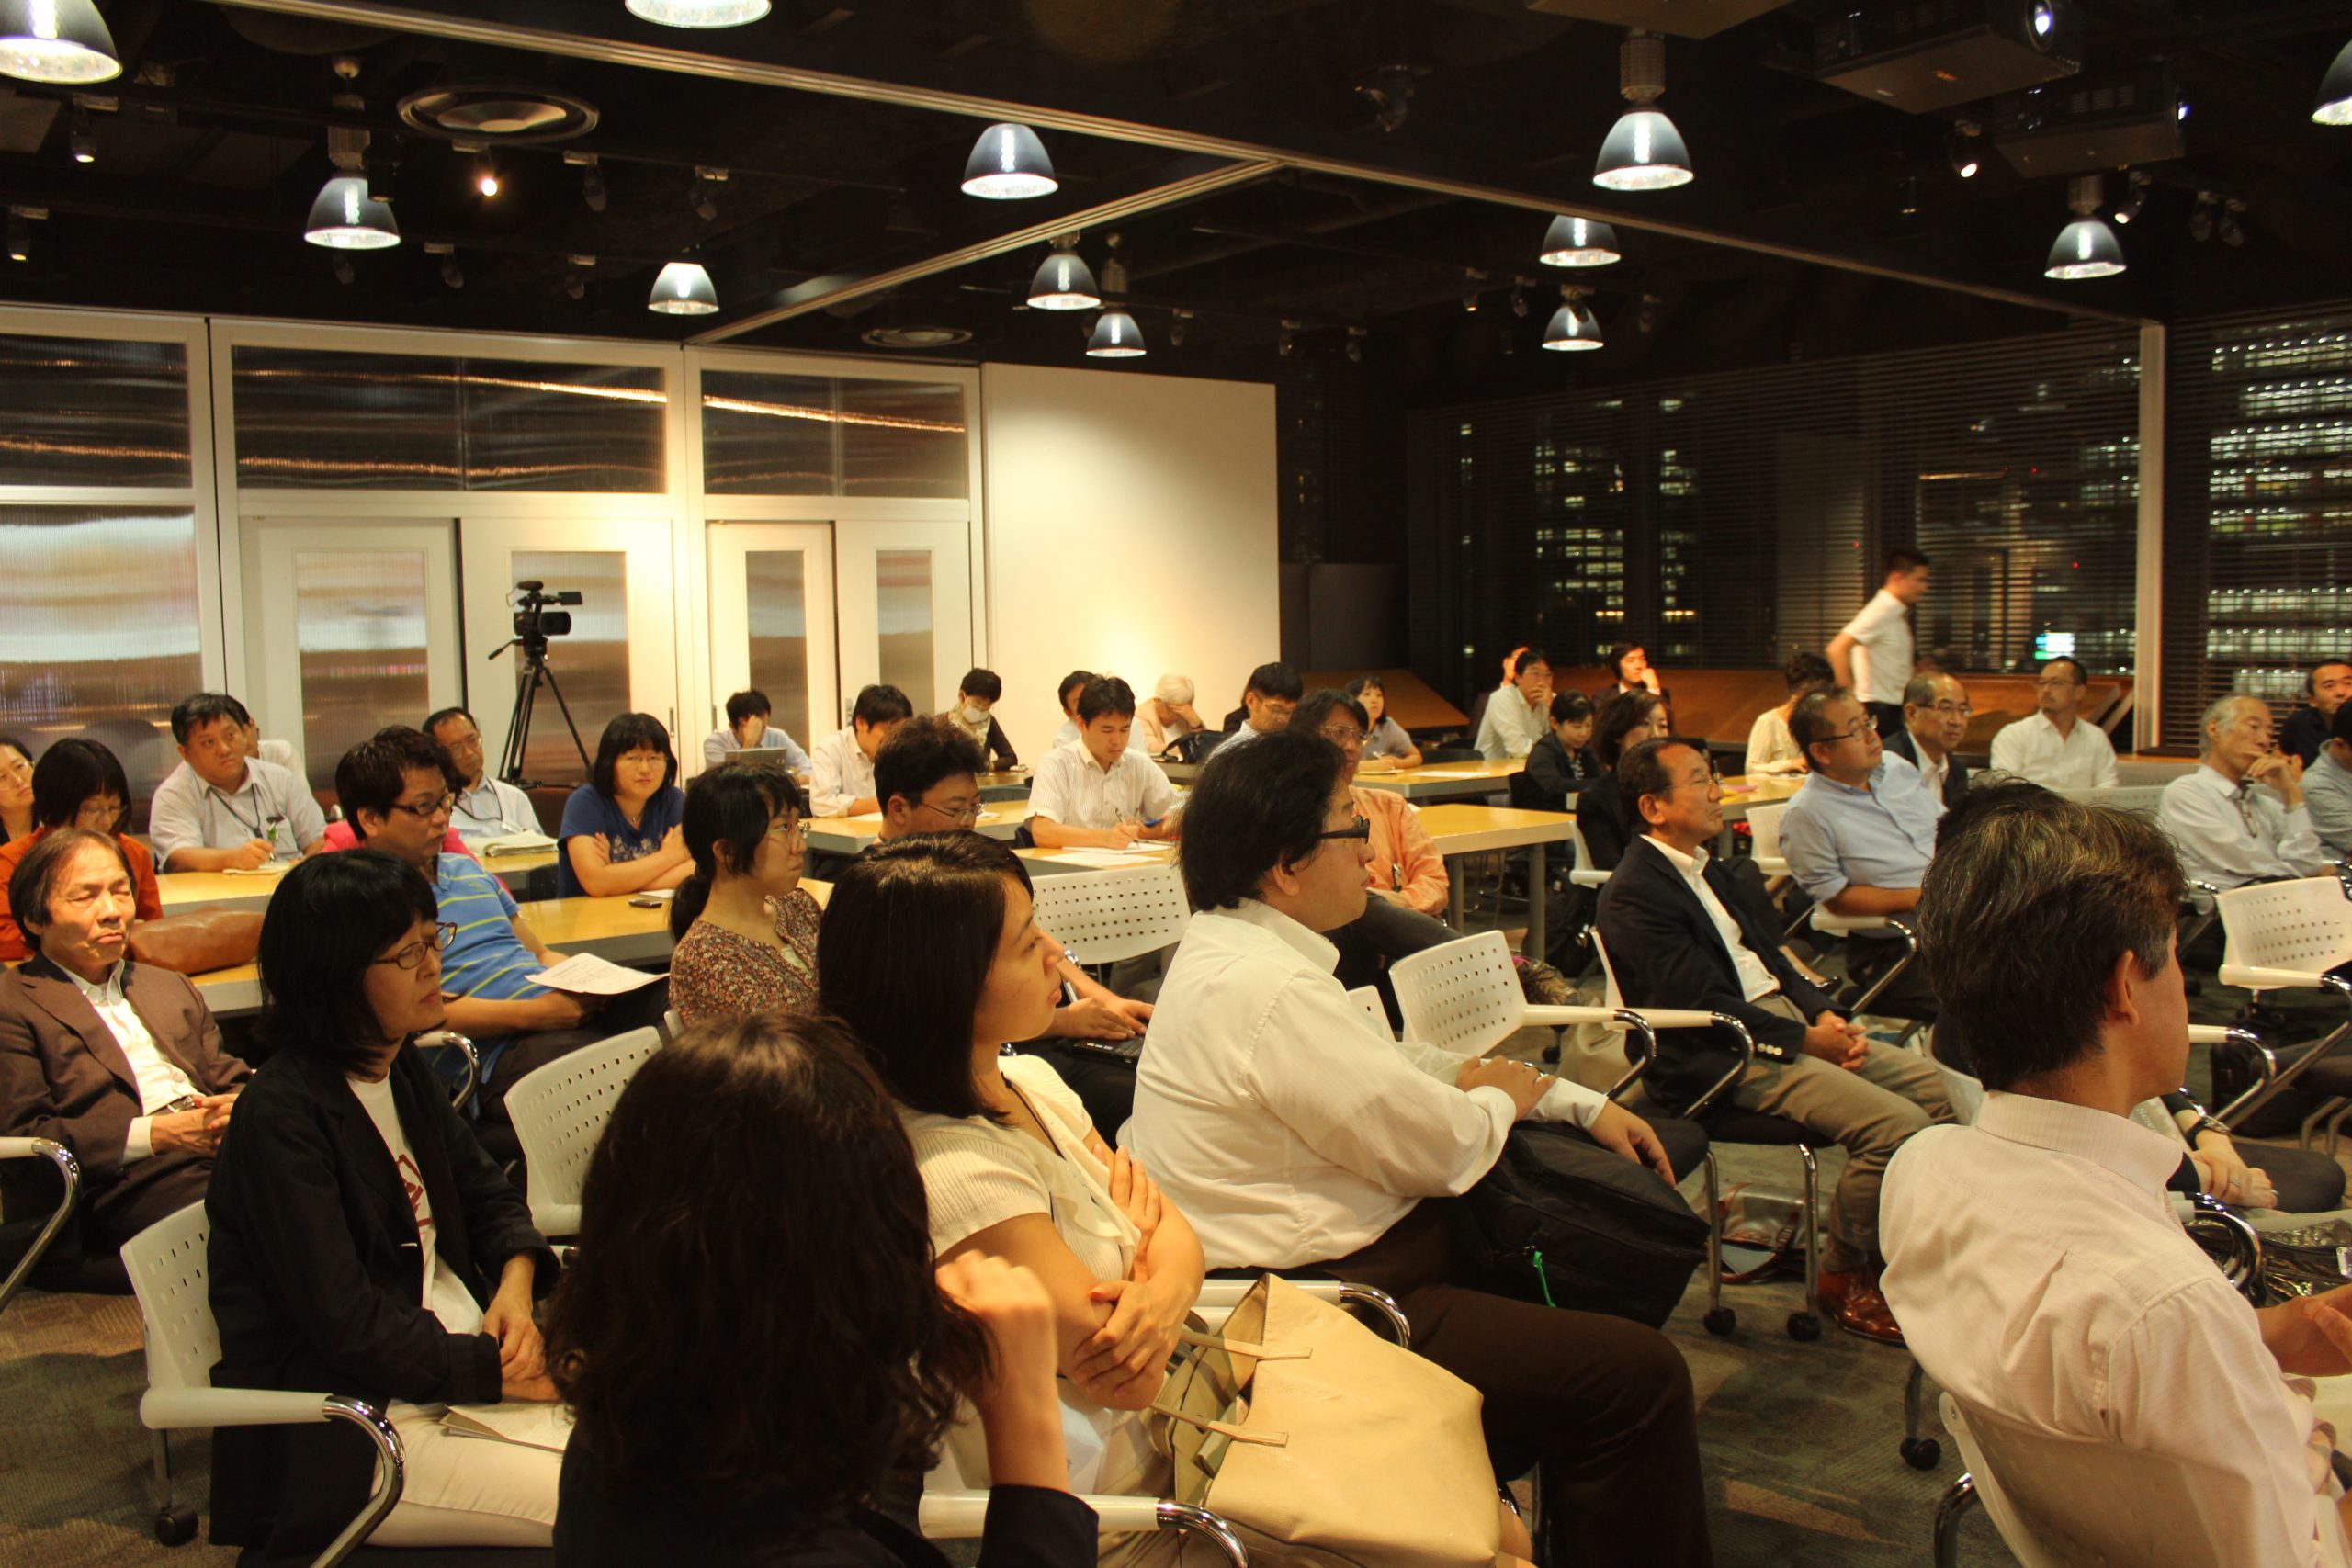 9月11日開催サイエンストークス・バー with 岸輝雄氏～日本の科学技術政策の課題（3）参加者からのQ&A